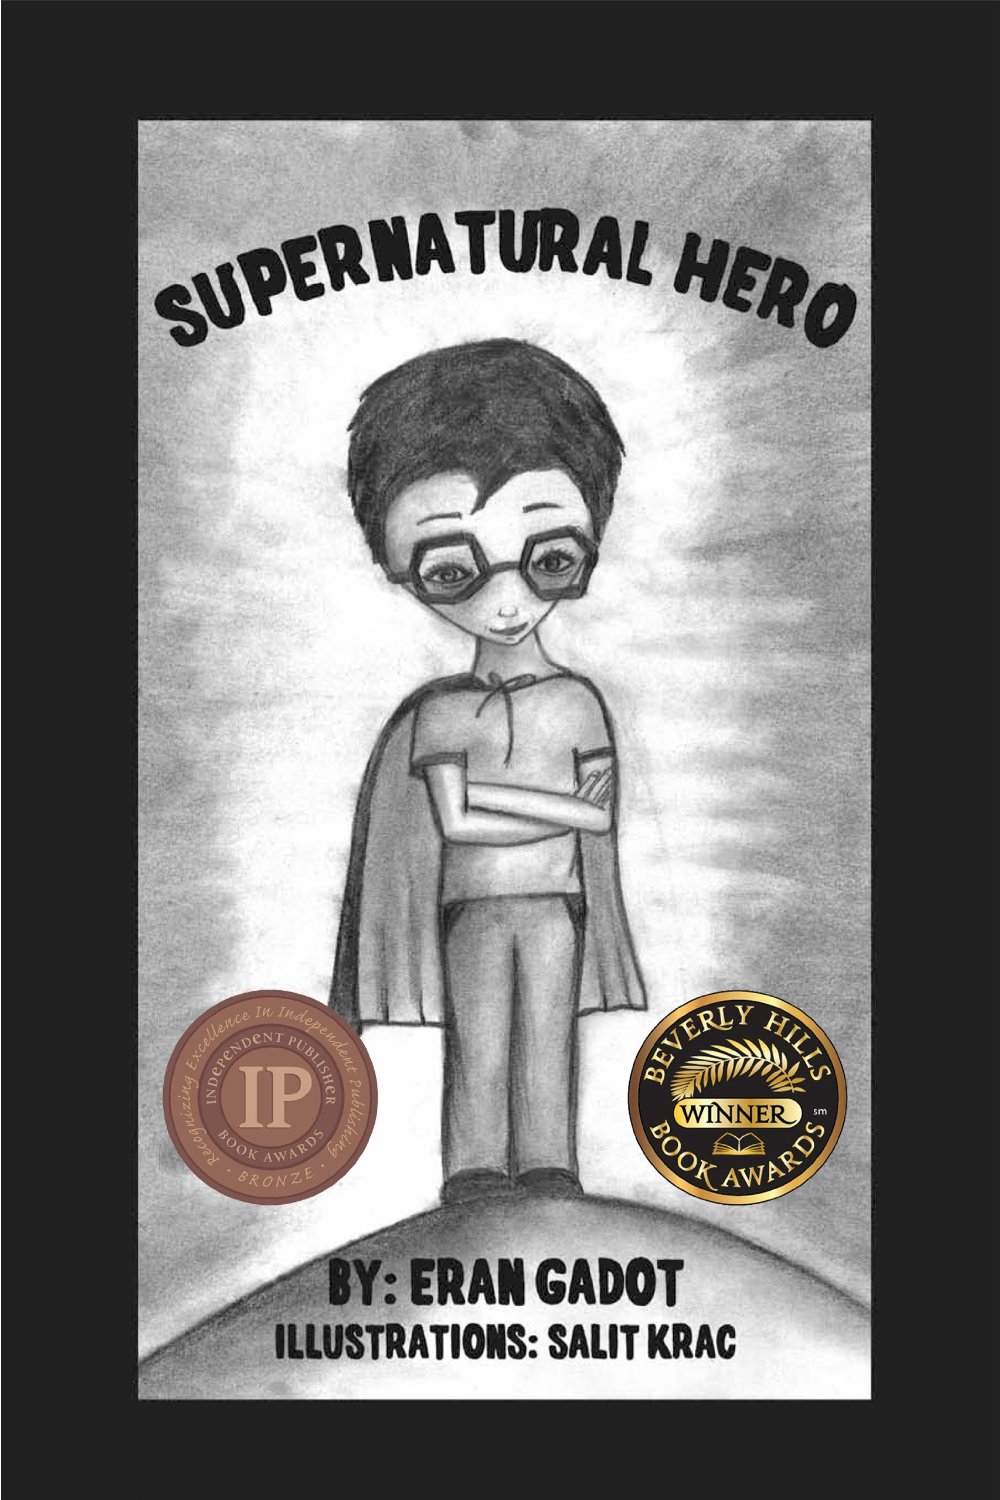 Supernautral Hero by Eran Gadot